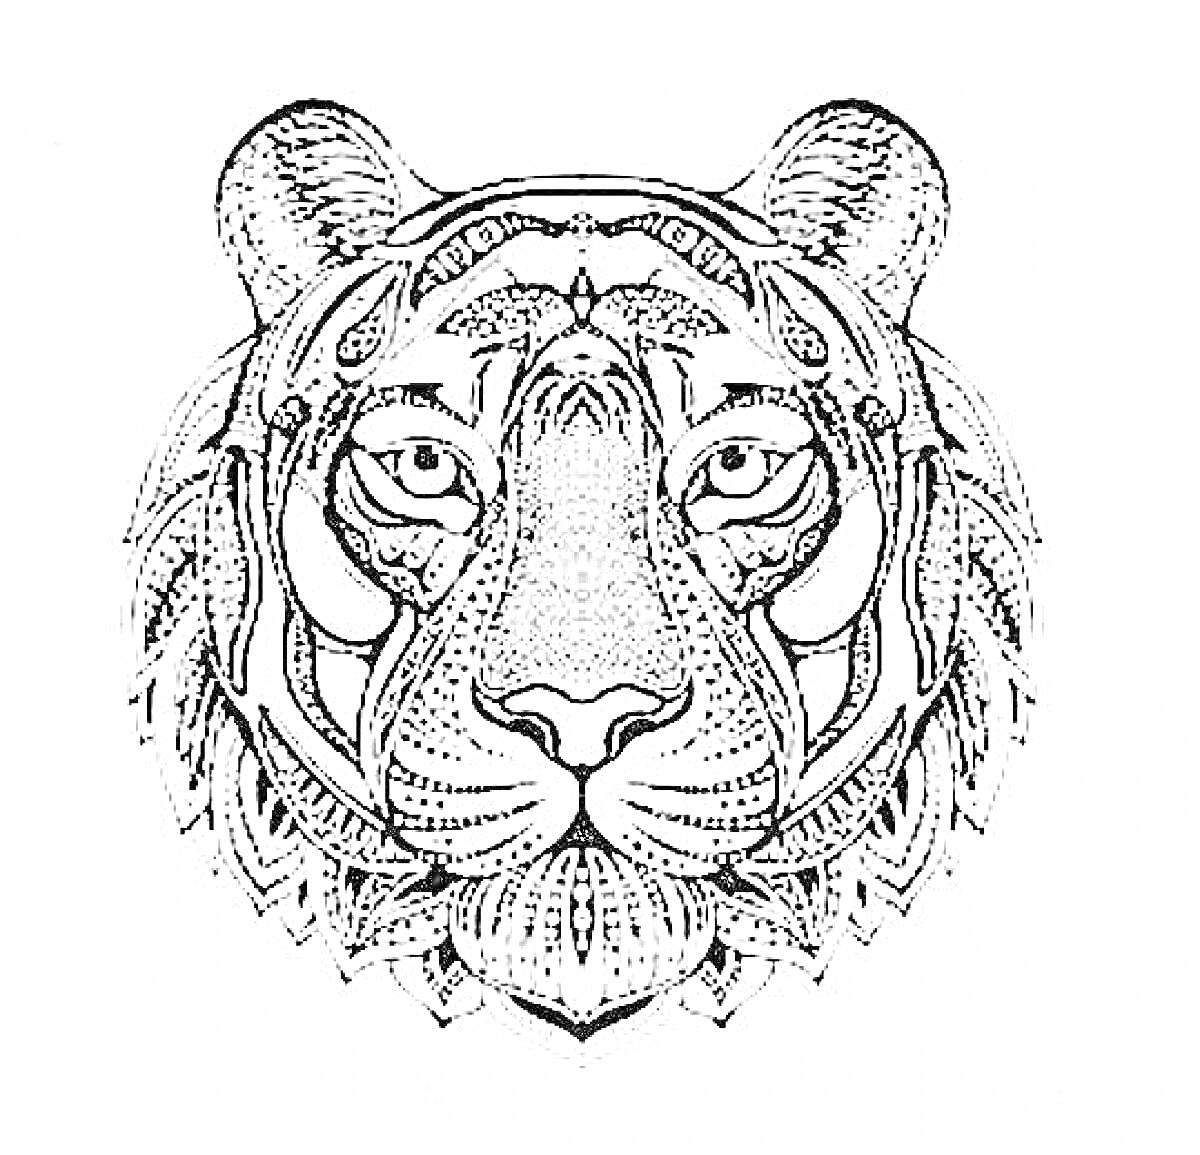 Раскраска Антистресс раскраска с тигром, стилизованное изображение тигра с детализированной симметричной узорчатой проработкой